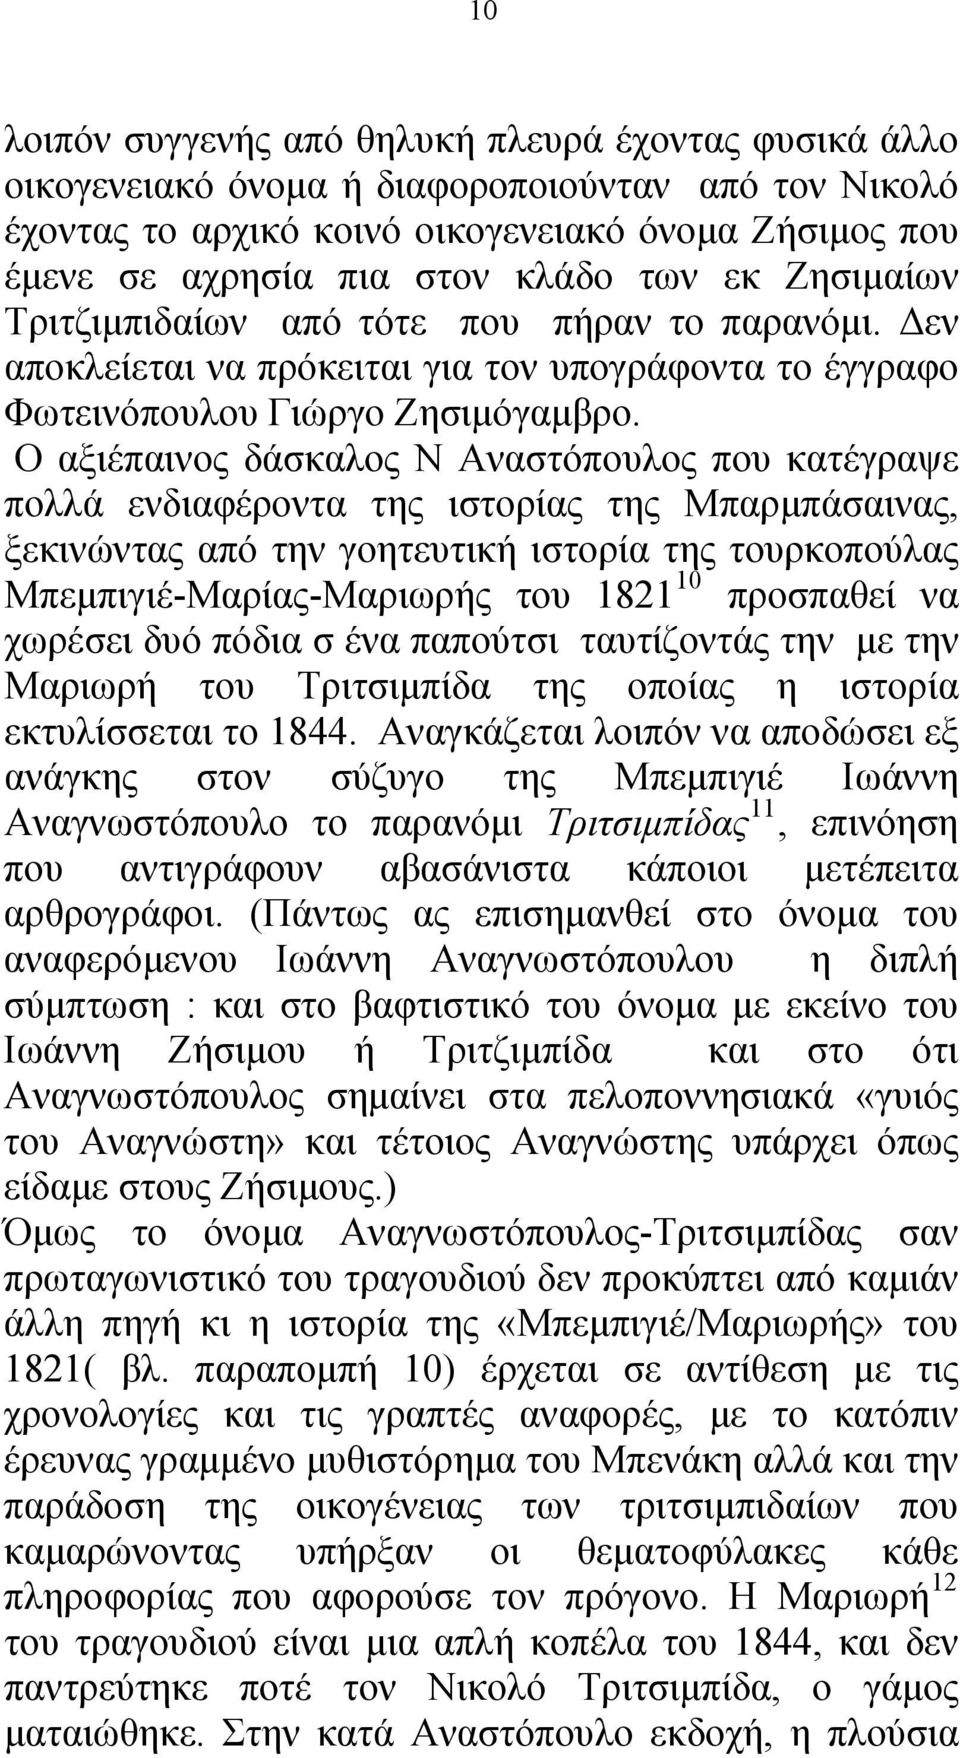 Ο αξιέπαινος δάσκαλος Ν Αναστόπουλος που κατέγραψε πολλά ενδιαφέροντα της ιστορίας της Μπαρμπάσαινας, ξεκινώντας από την γοητευτική ιστορία της τουρκοπούλας Μπεμπιγιέ-Μαρίας-Μαριωρής του 1821 10